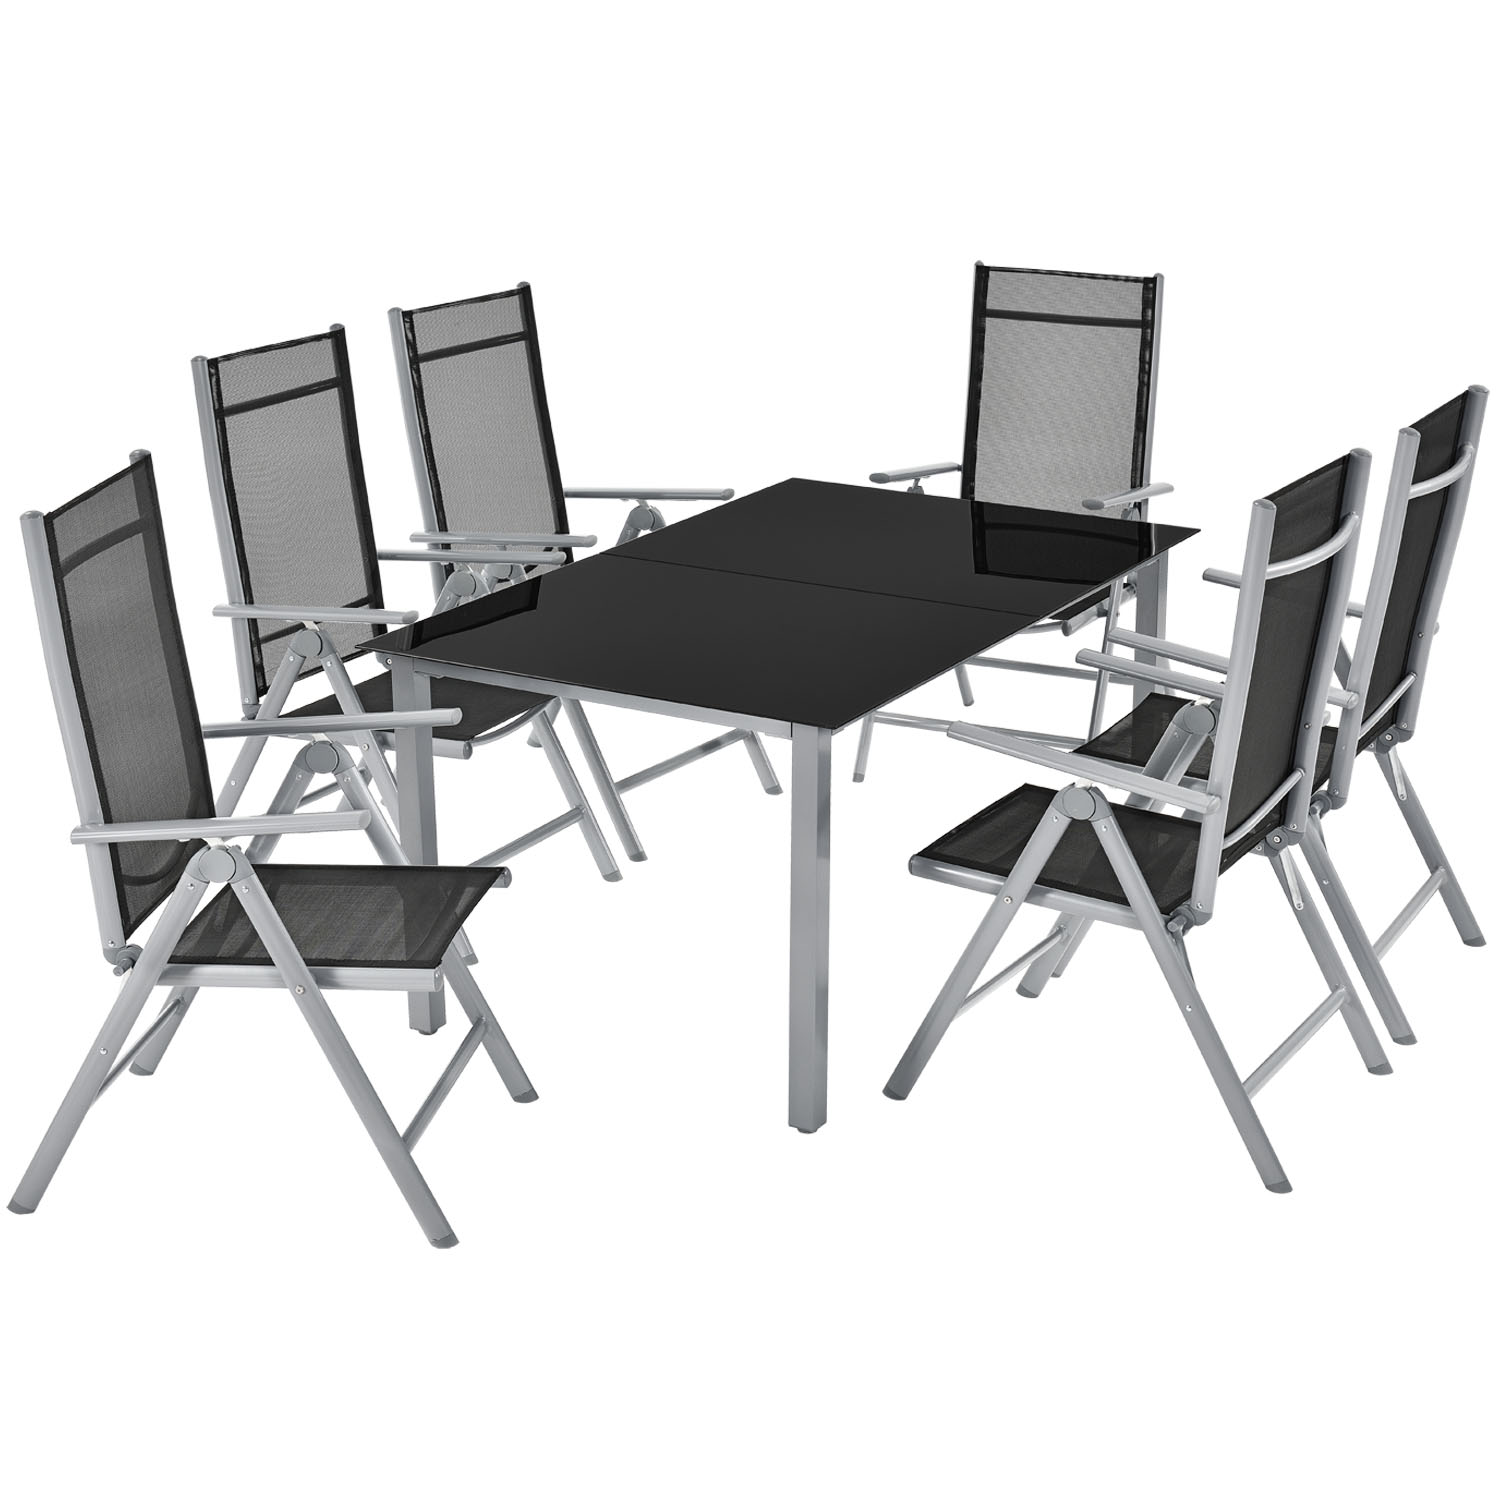 Bild zu 7-teilige Aluminium Gartengarnitur Mailand mit Tisch und 6 Stühlen für 219,95€ (Vergleich: 254,95€)